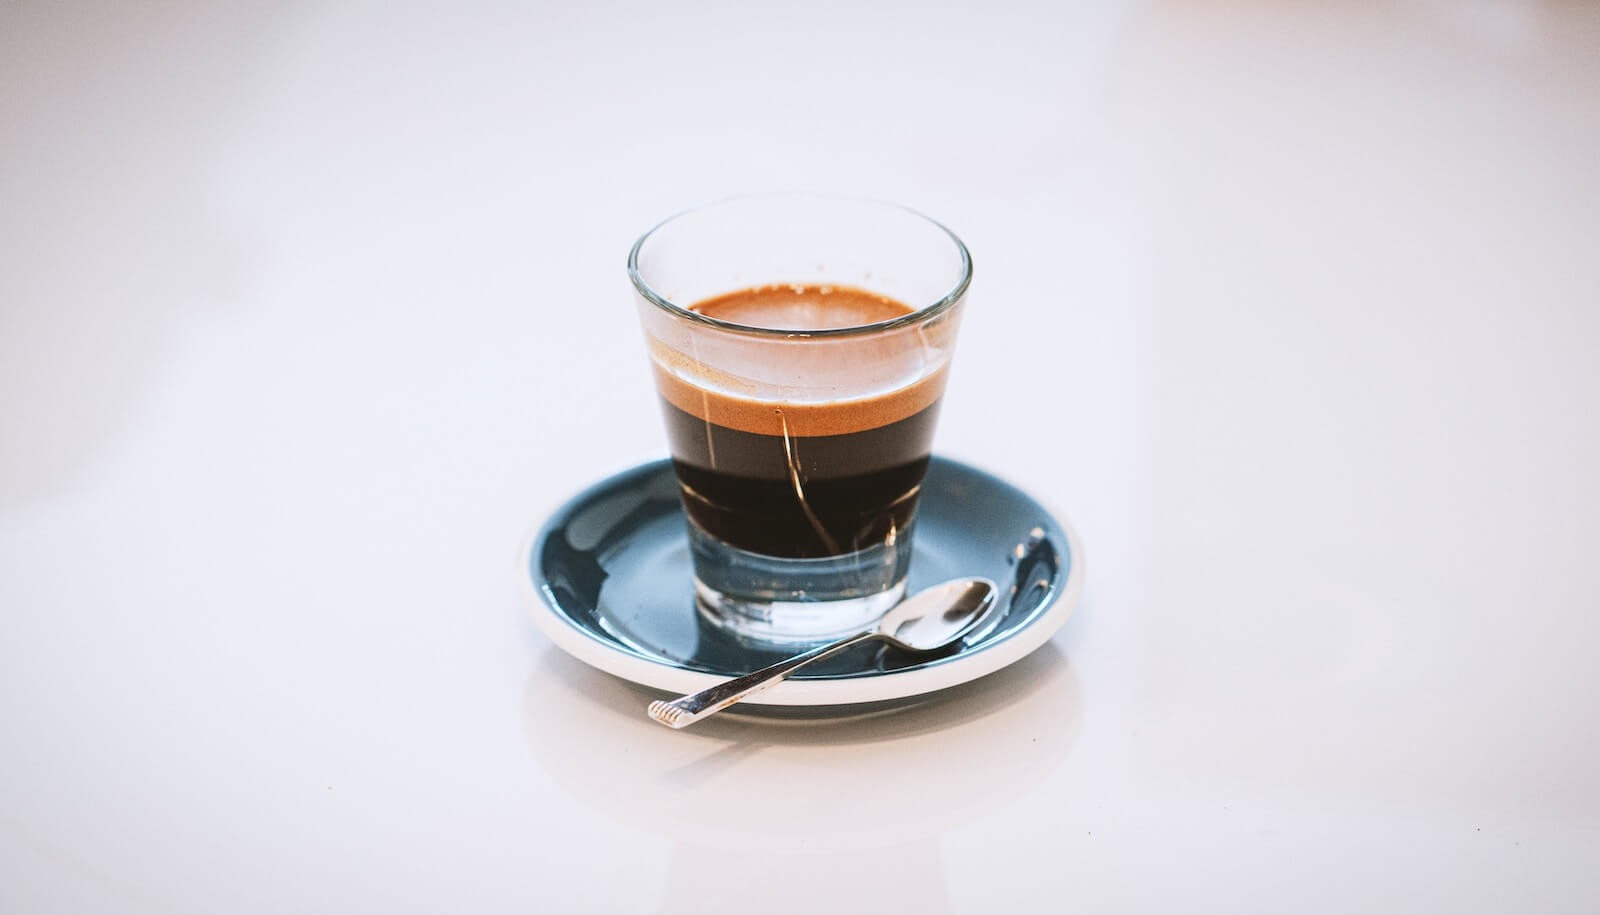 Peneliti Italia mengatakan bahwa itu melindungi otak Anda dari penyakit Alzheimer dengan meminum espresso setiap hari